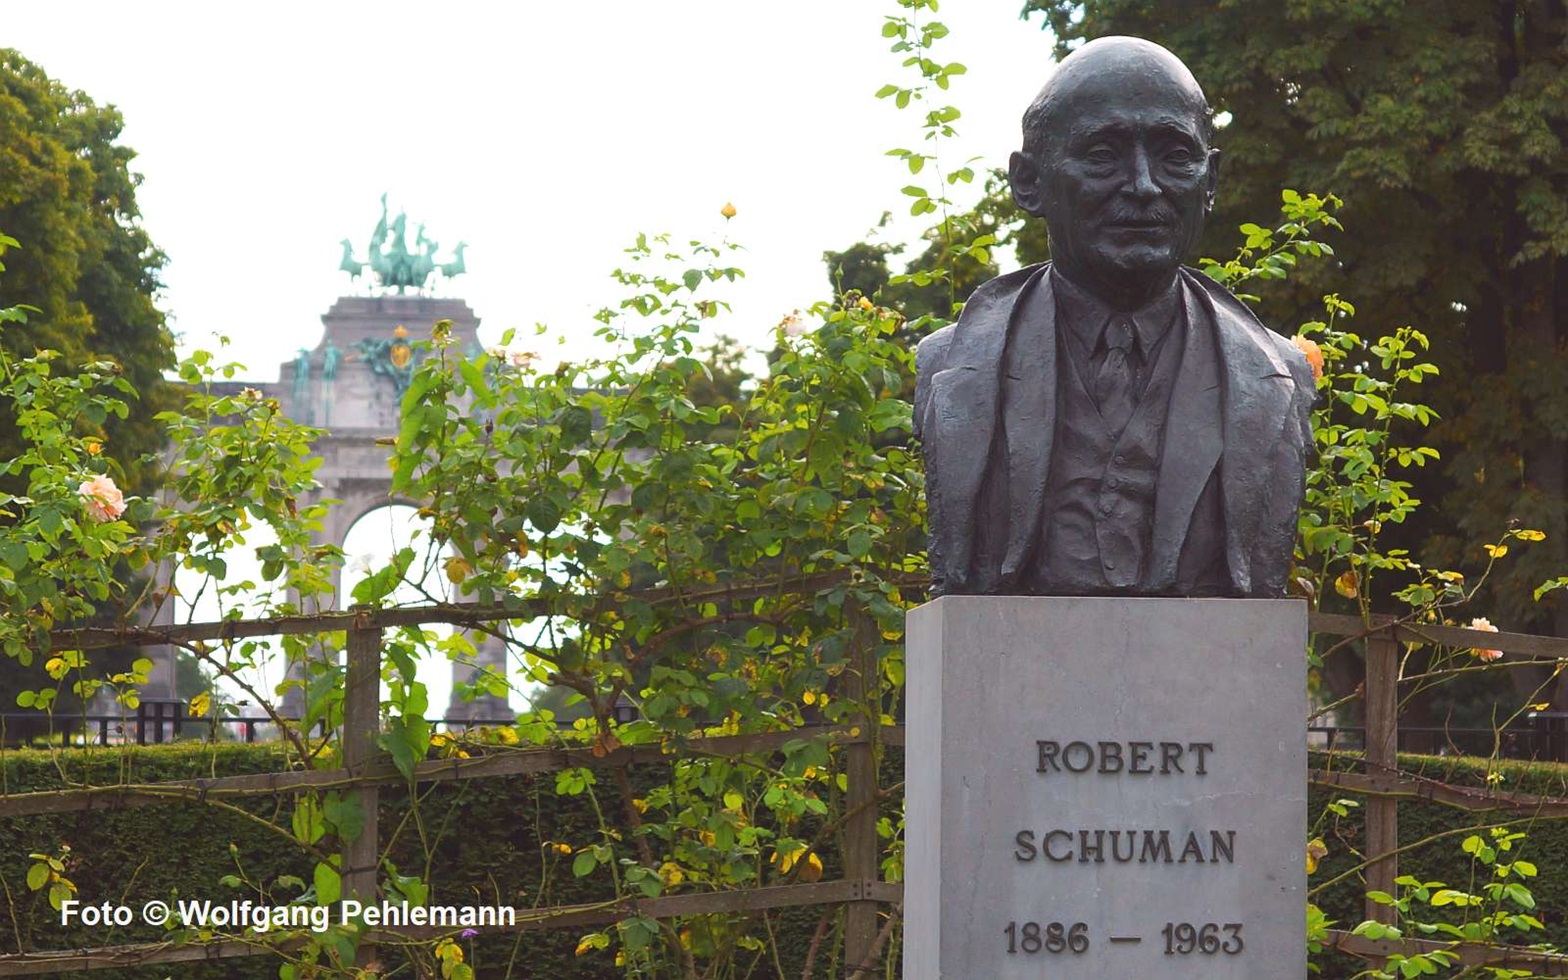 Robert Schuman nix Komponist franz Staatsmann mitbegründer EU - Brüssel Belgien- Foto © Wolfgang Pehlemann DSC09130